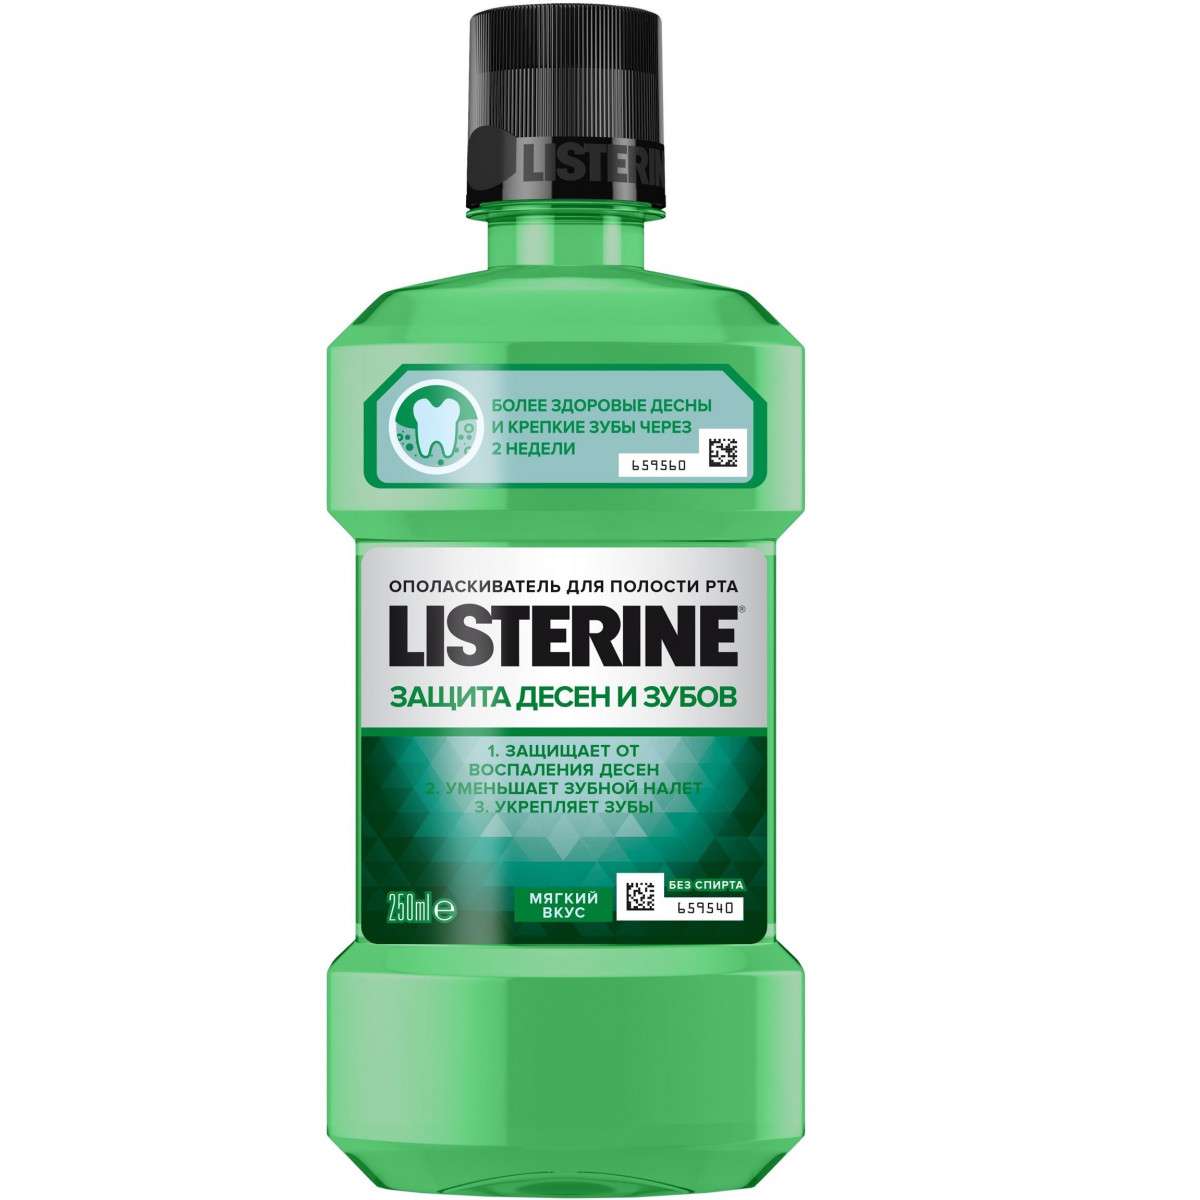 Listerine ополаскиватель Защита десен и зубов